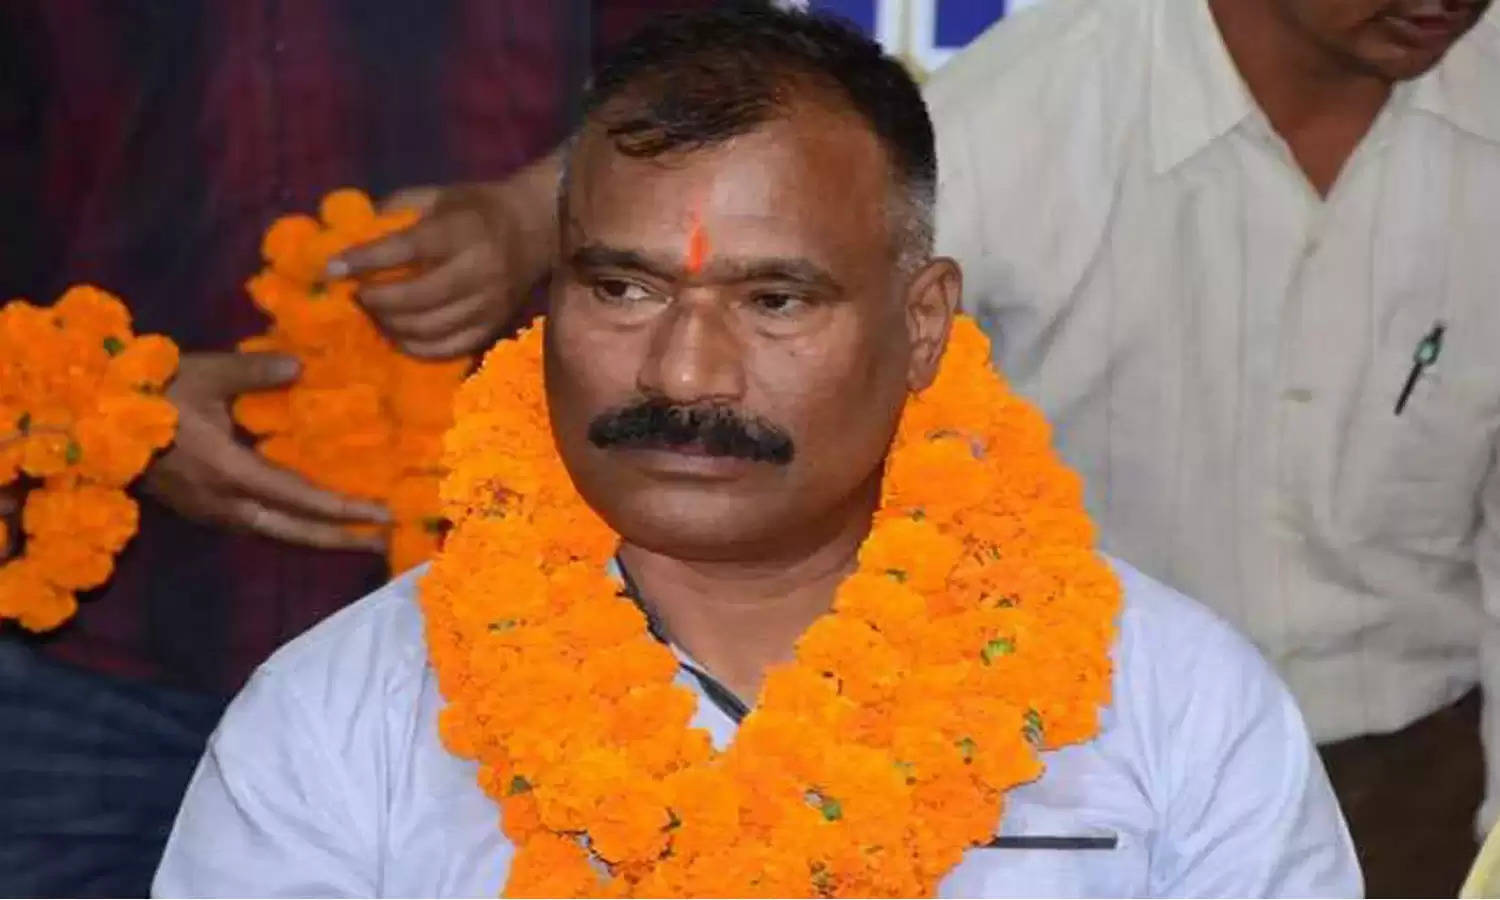 Uttarakhand : बीजेपी नेता की बेटी की शादी को लेकर मचा घमासान, दूल्हा मुस्लिम होने पर मिल रही धमकियां 